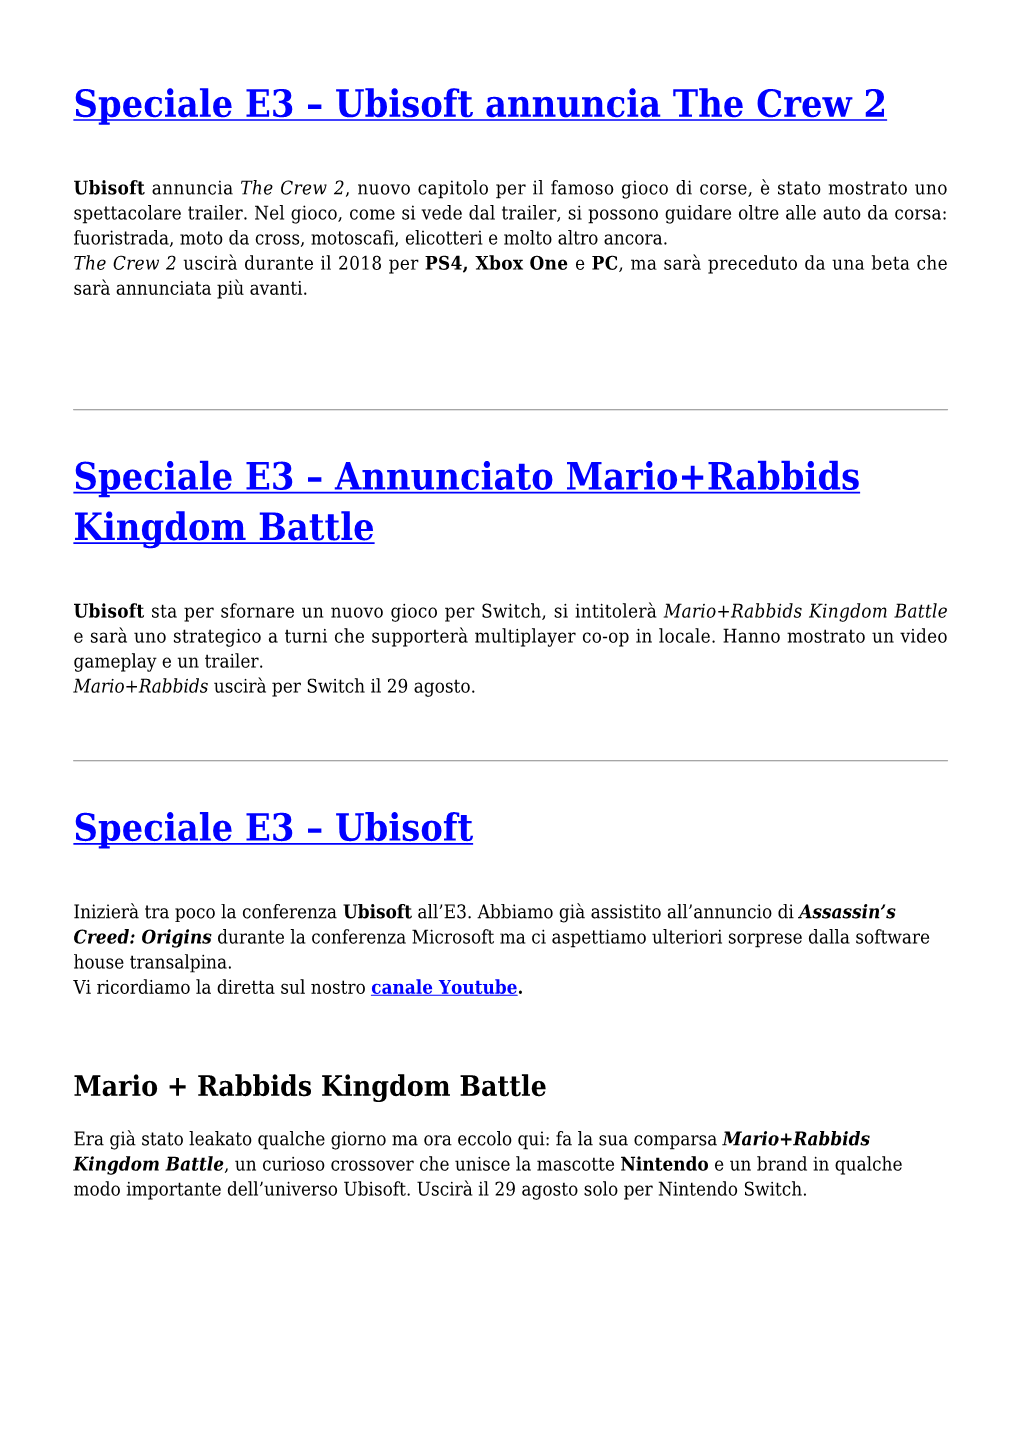 Annunciato Mario+Rabbids Kingdom Battle,Speciale E3